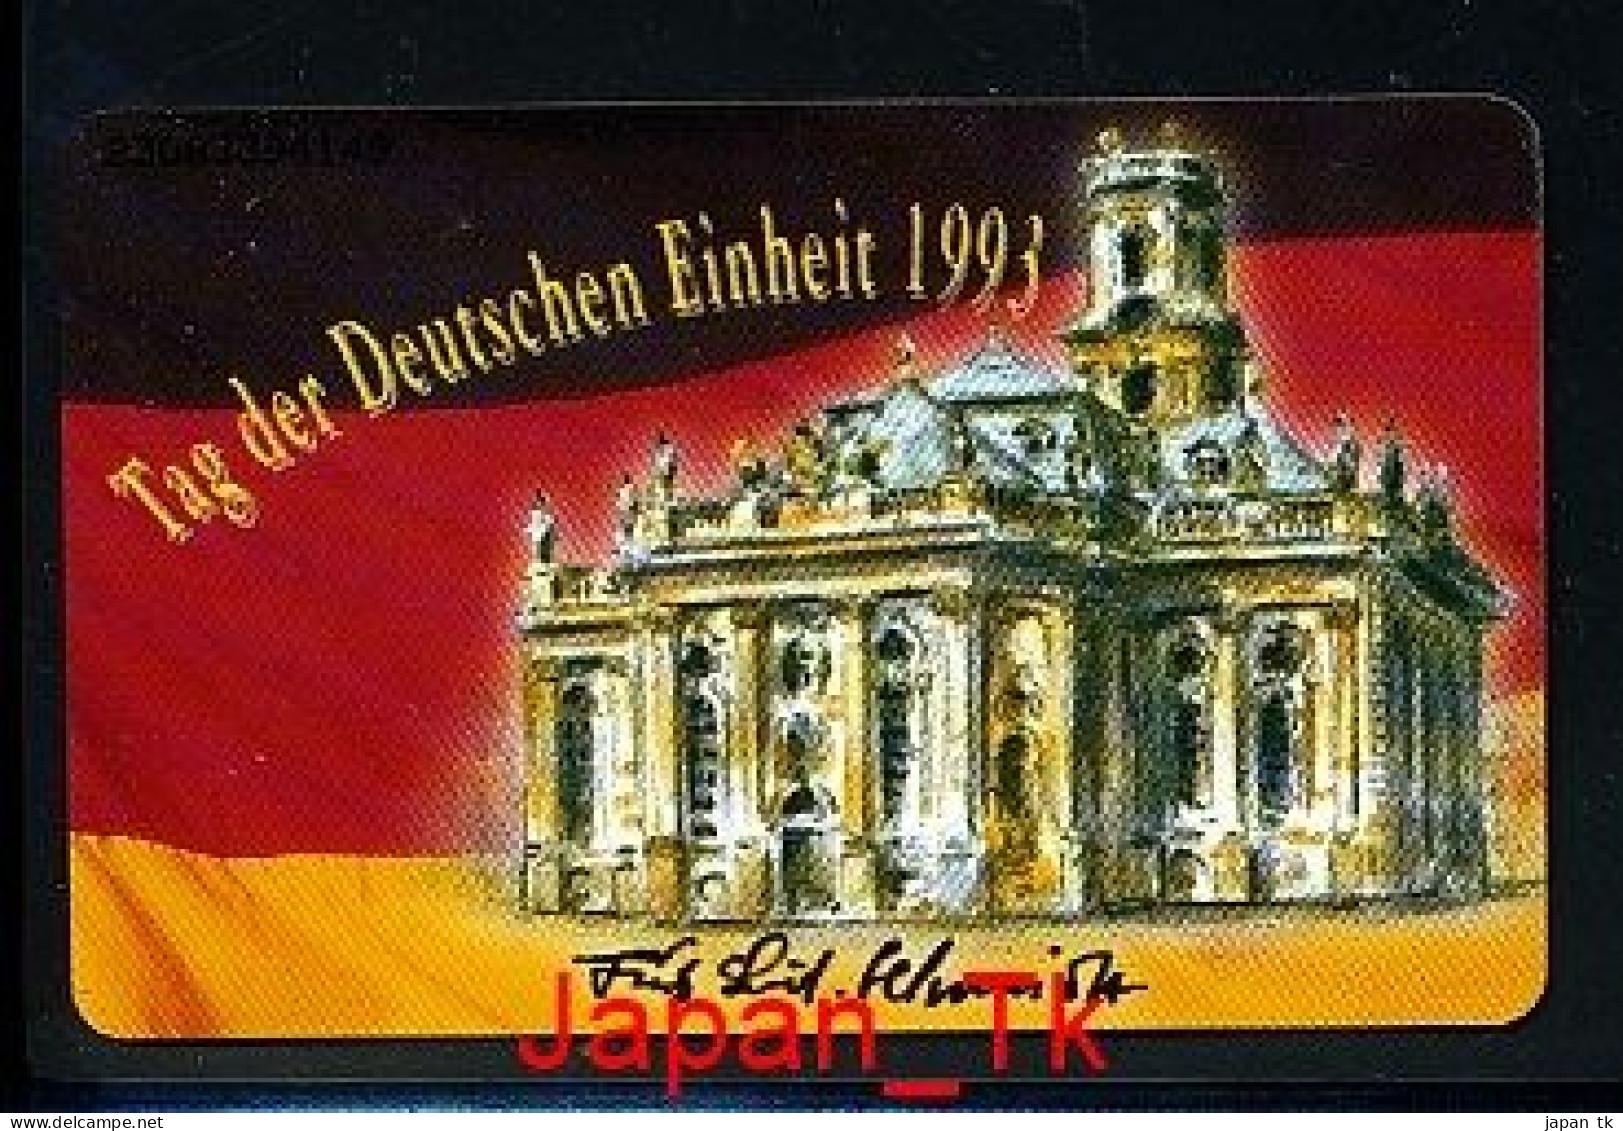 GERMANY O 961 93 LV Der Briefmarkensammler Des Saarlandes E.V.   - Aufl  10 000 - Siehe Scan - O-Series: Kundenserie Vom Sammlerservice Ausgeschlossen